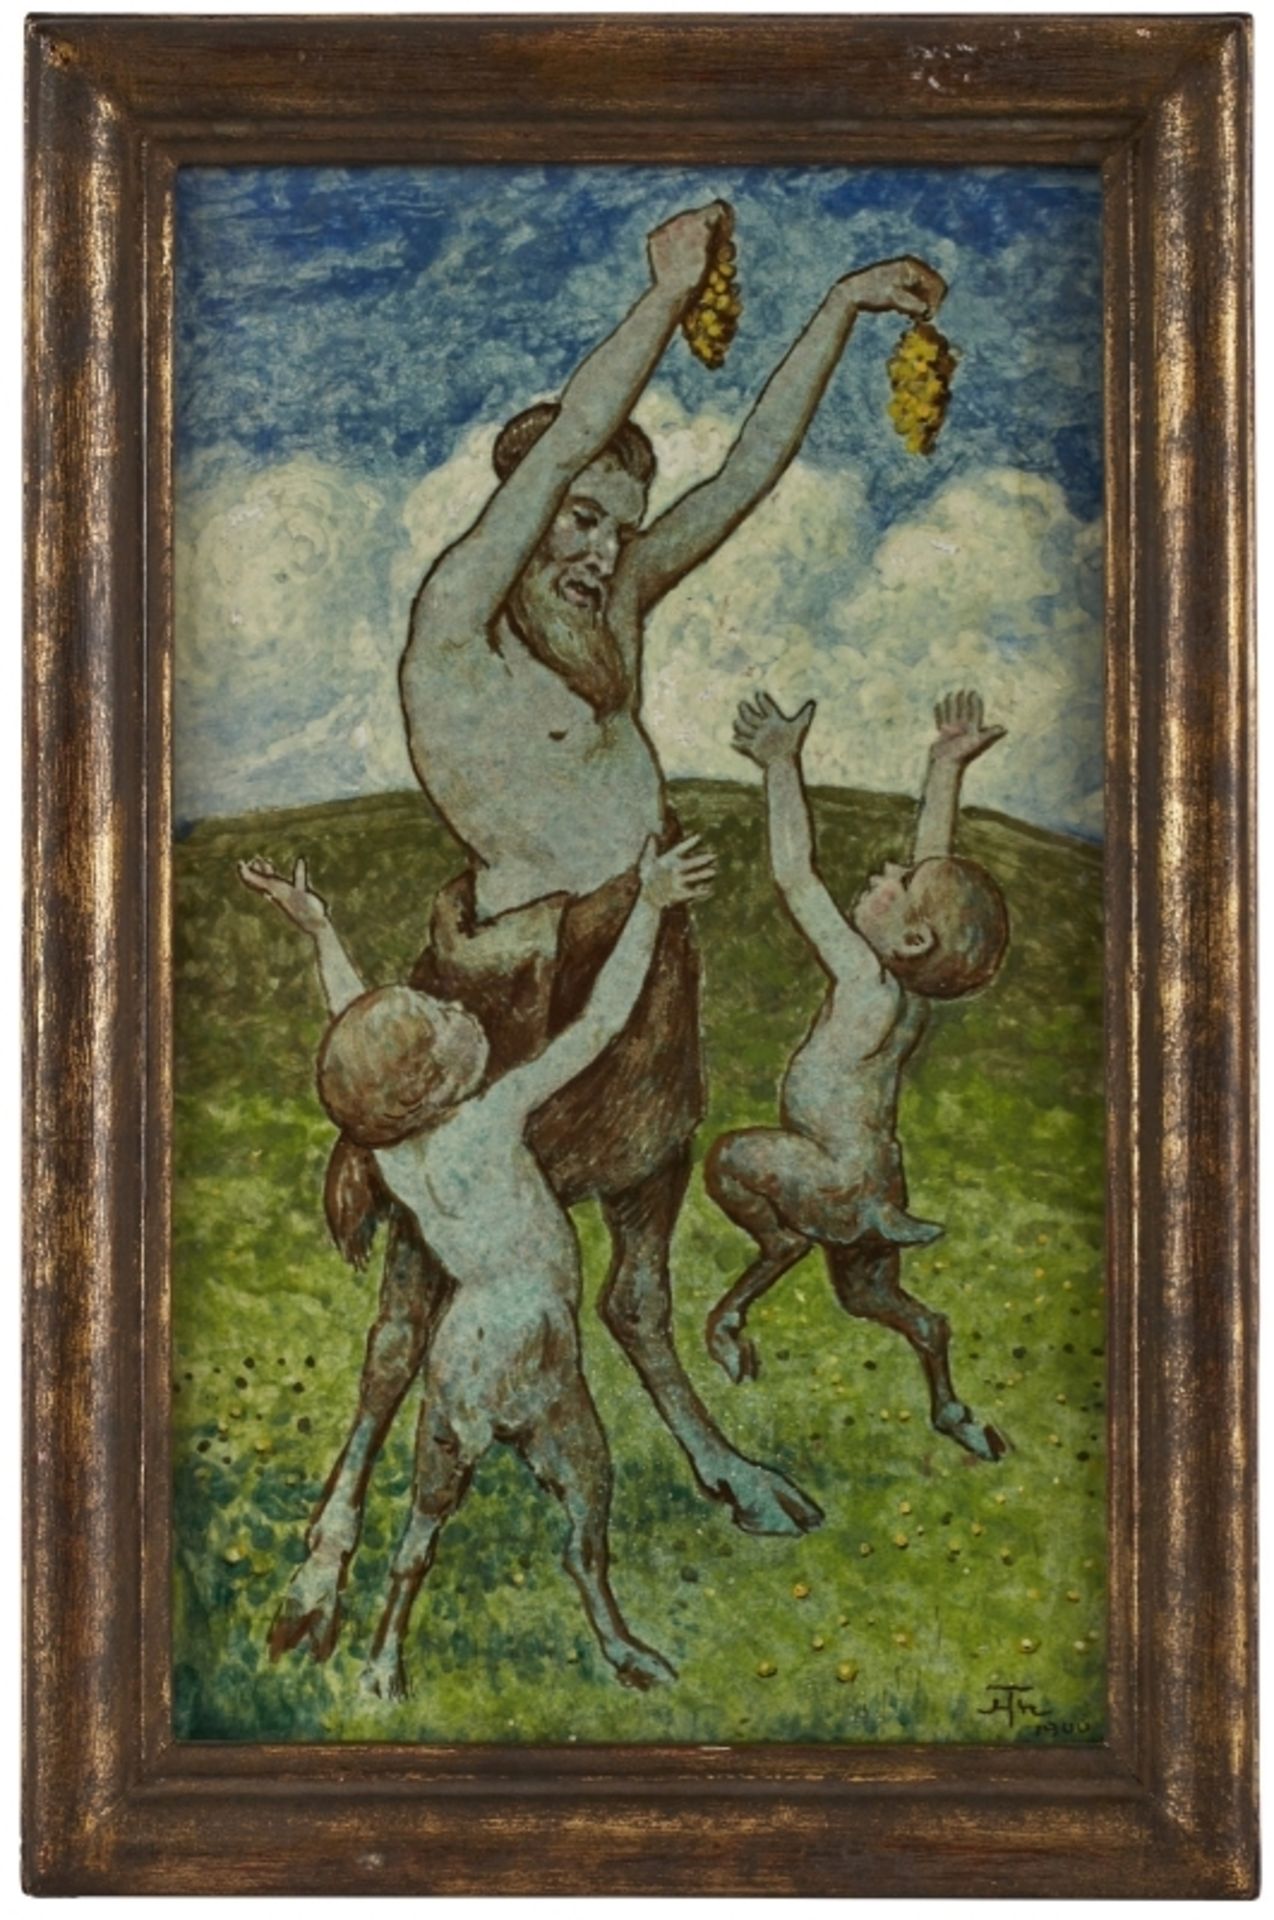 Fayenceplatte "Faune beim Spiel", Jugendstil, Hans Thoma dat. 1900.